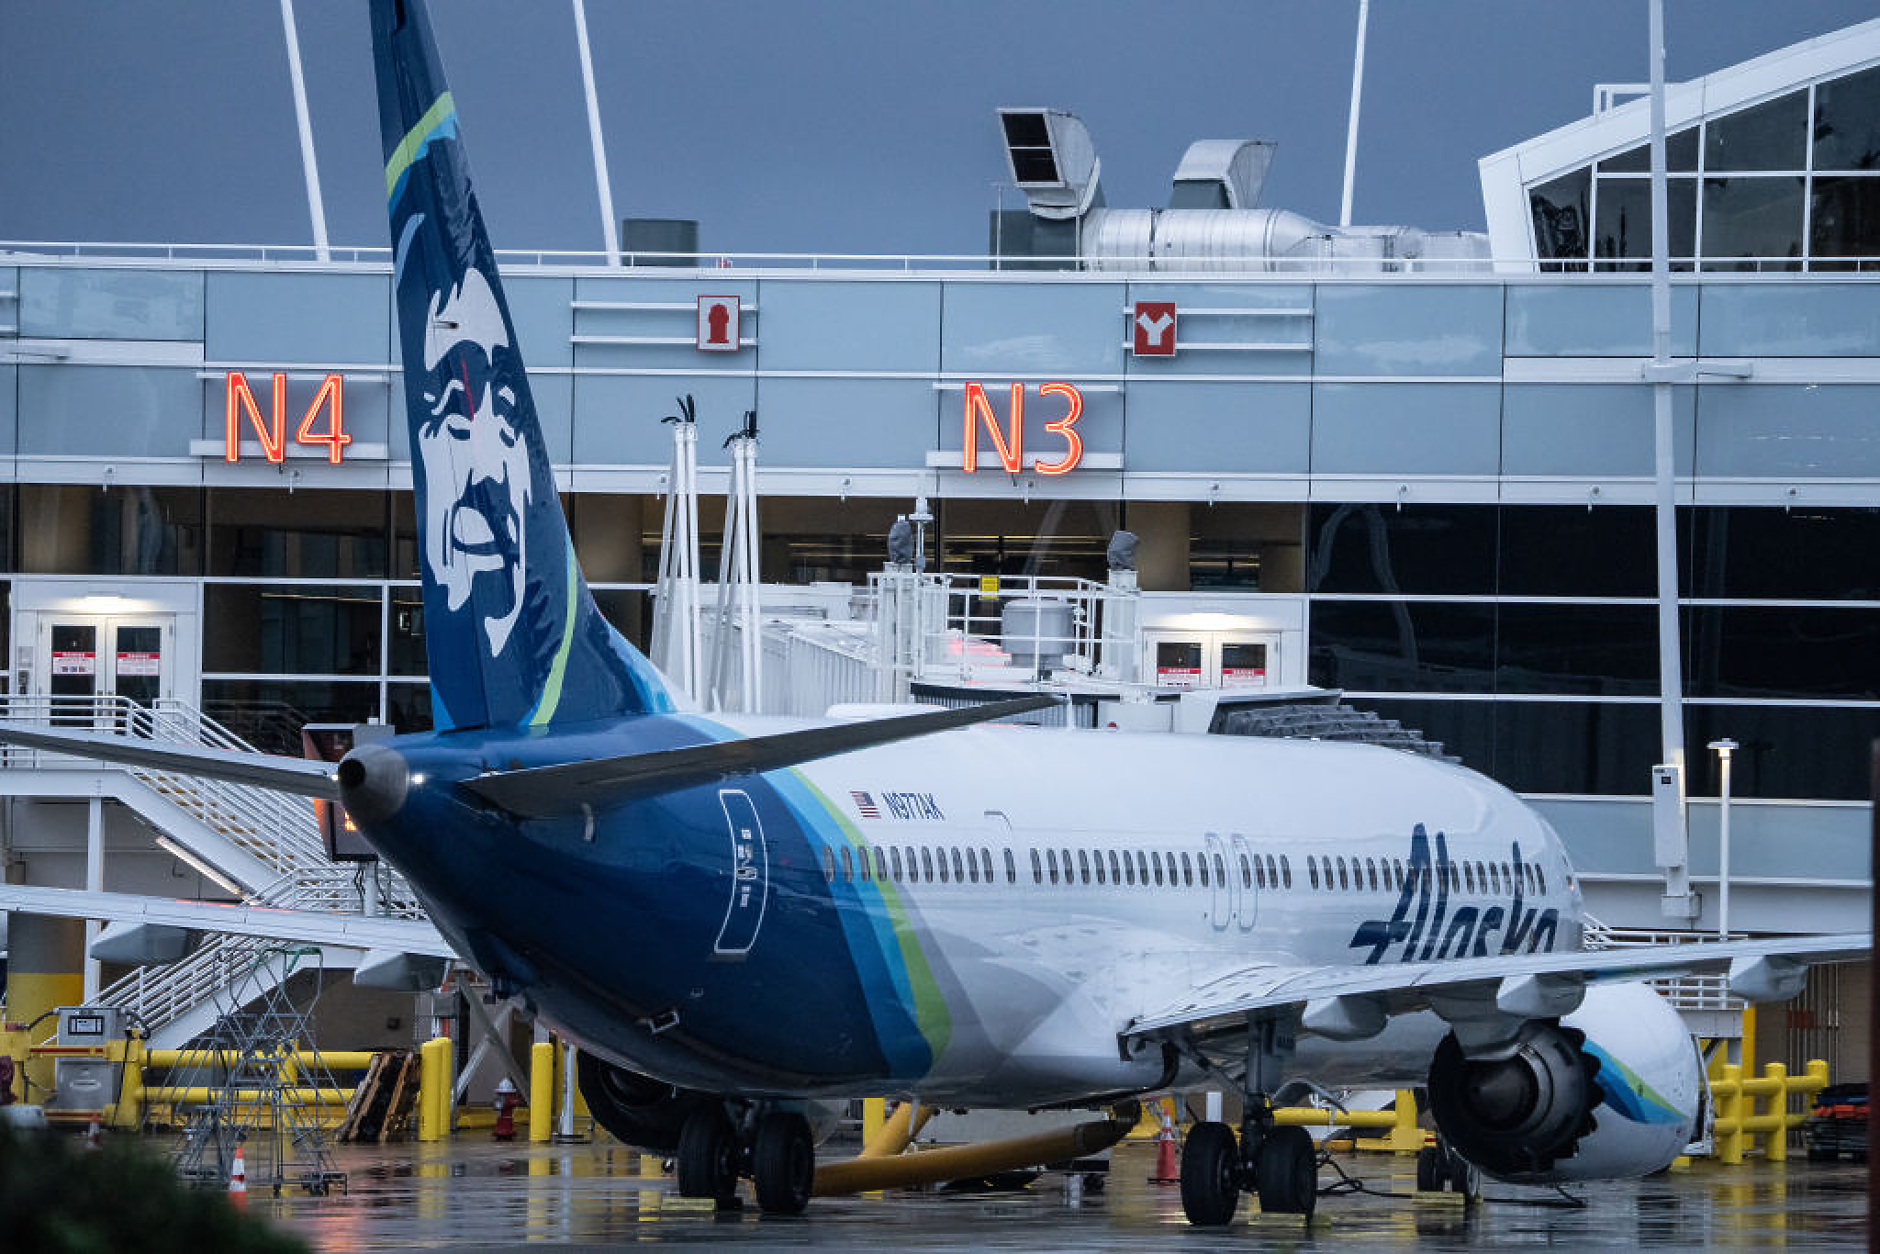 Шефът на Boeing призна за допуснати грешки след инцидента със самолет 737 Max 9